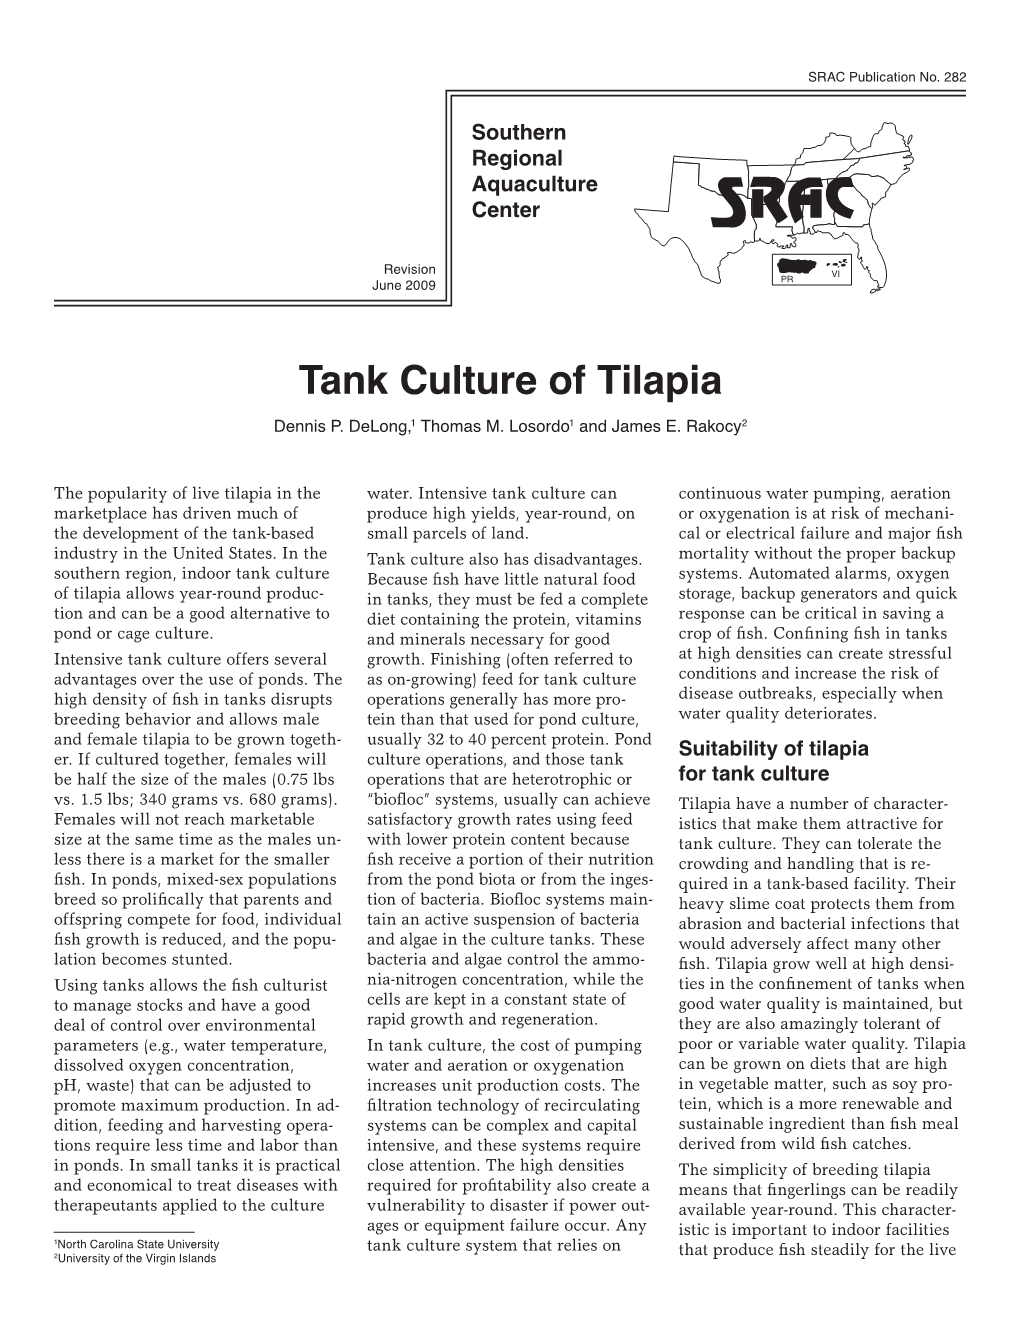 Tank Culture of Tilapia Dennis P